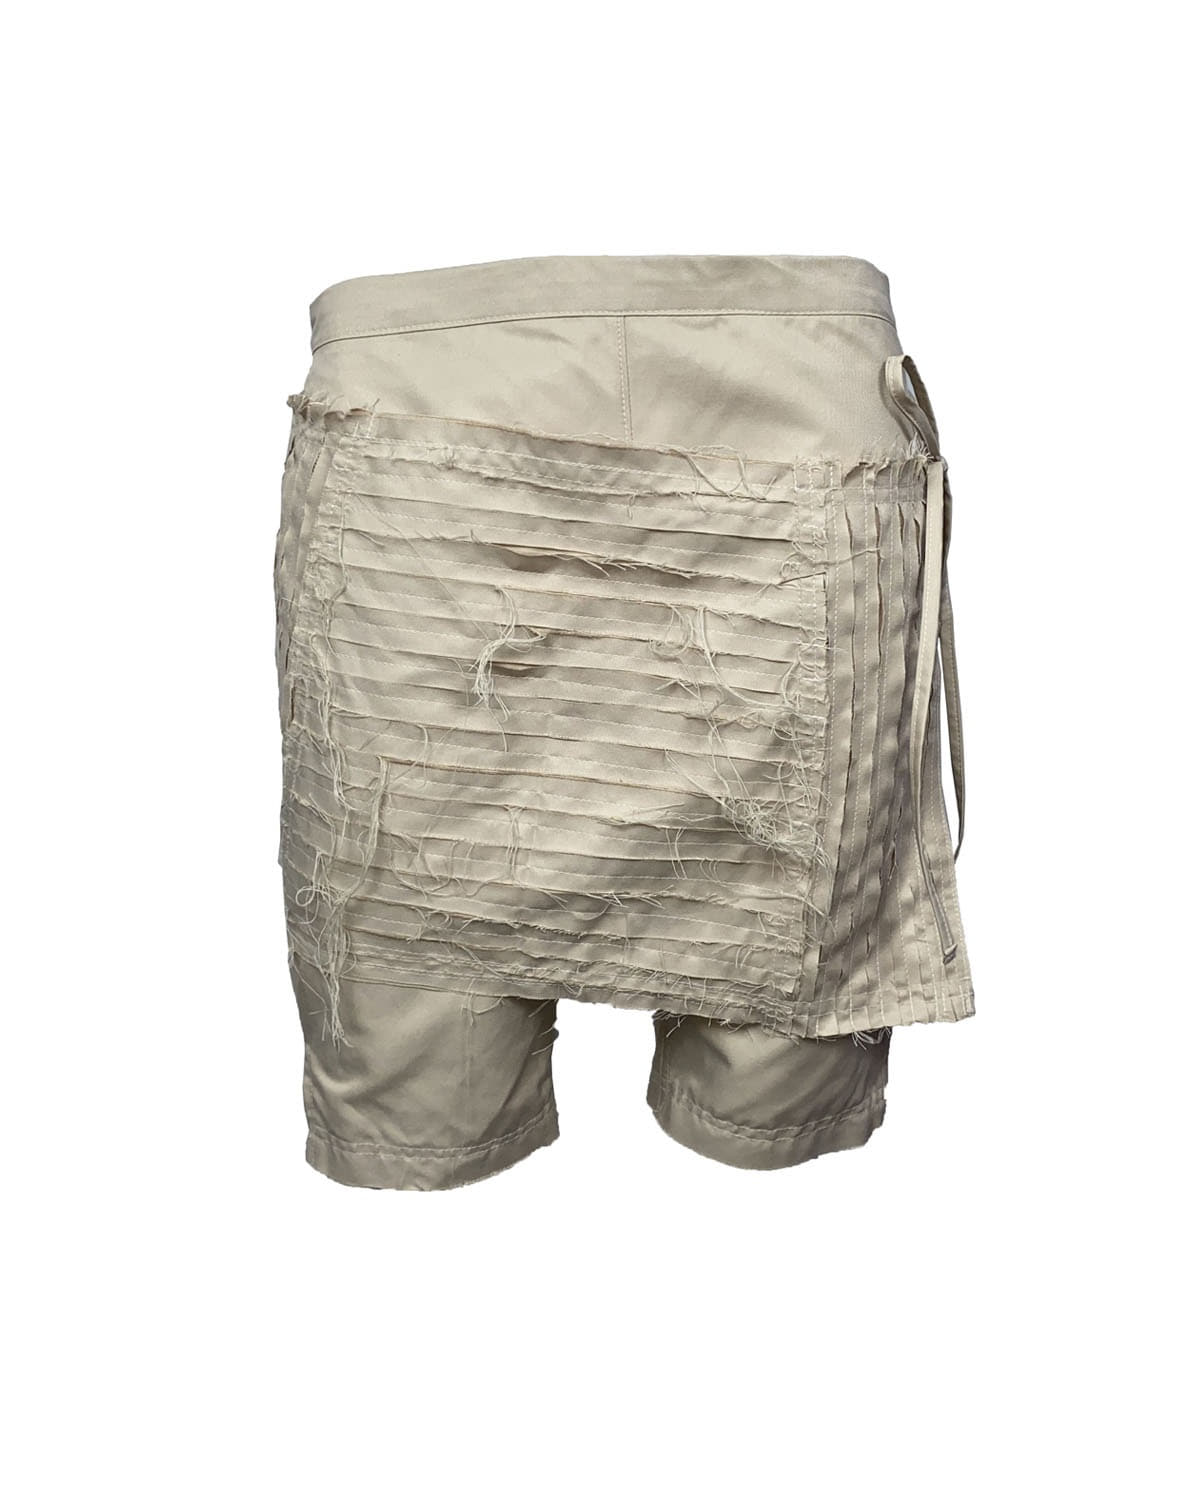 wrap shorts_BG 142.000₩→37,000₩